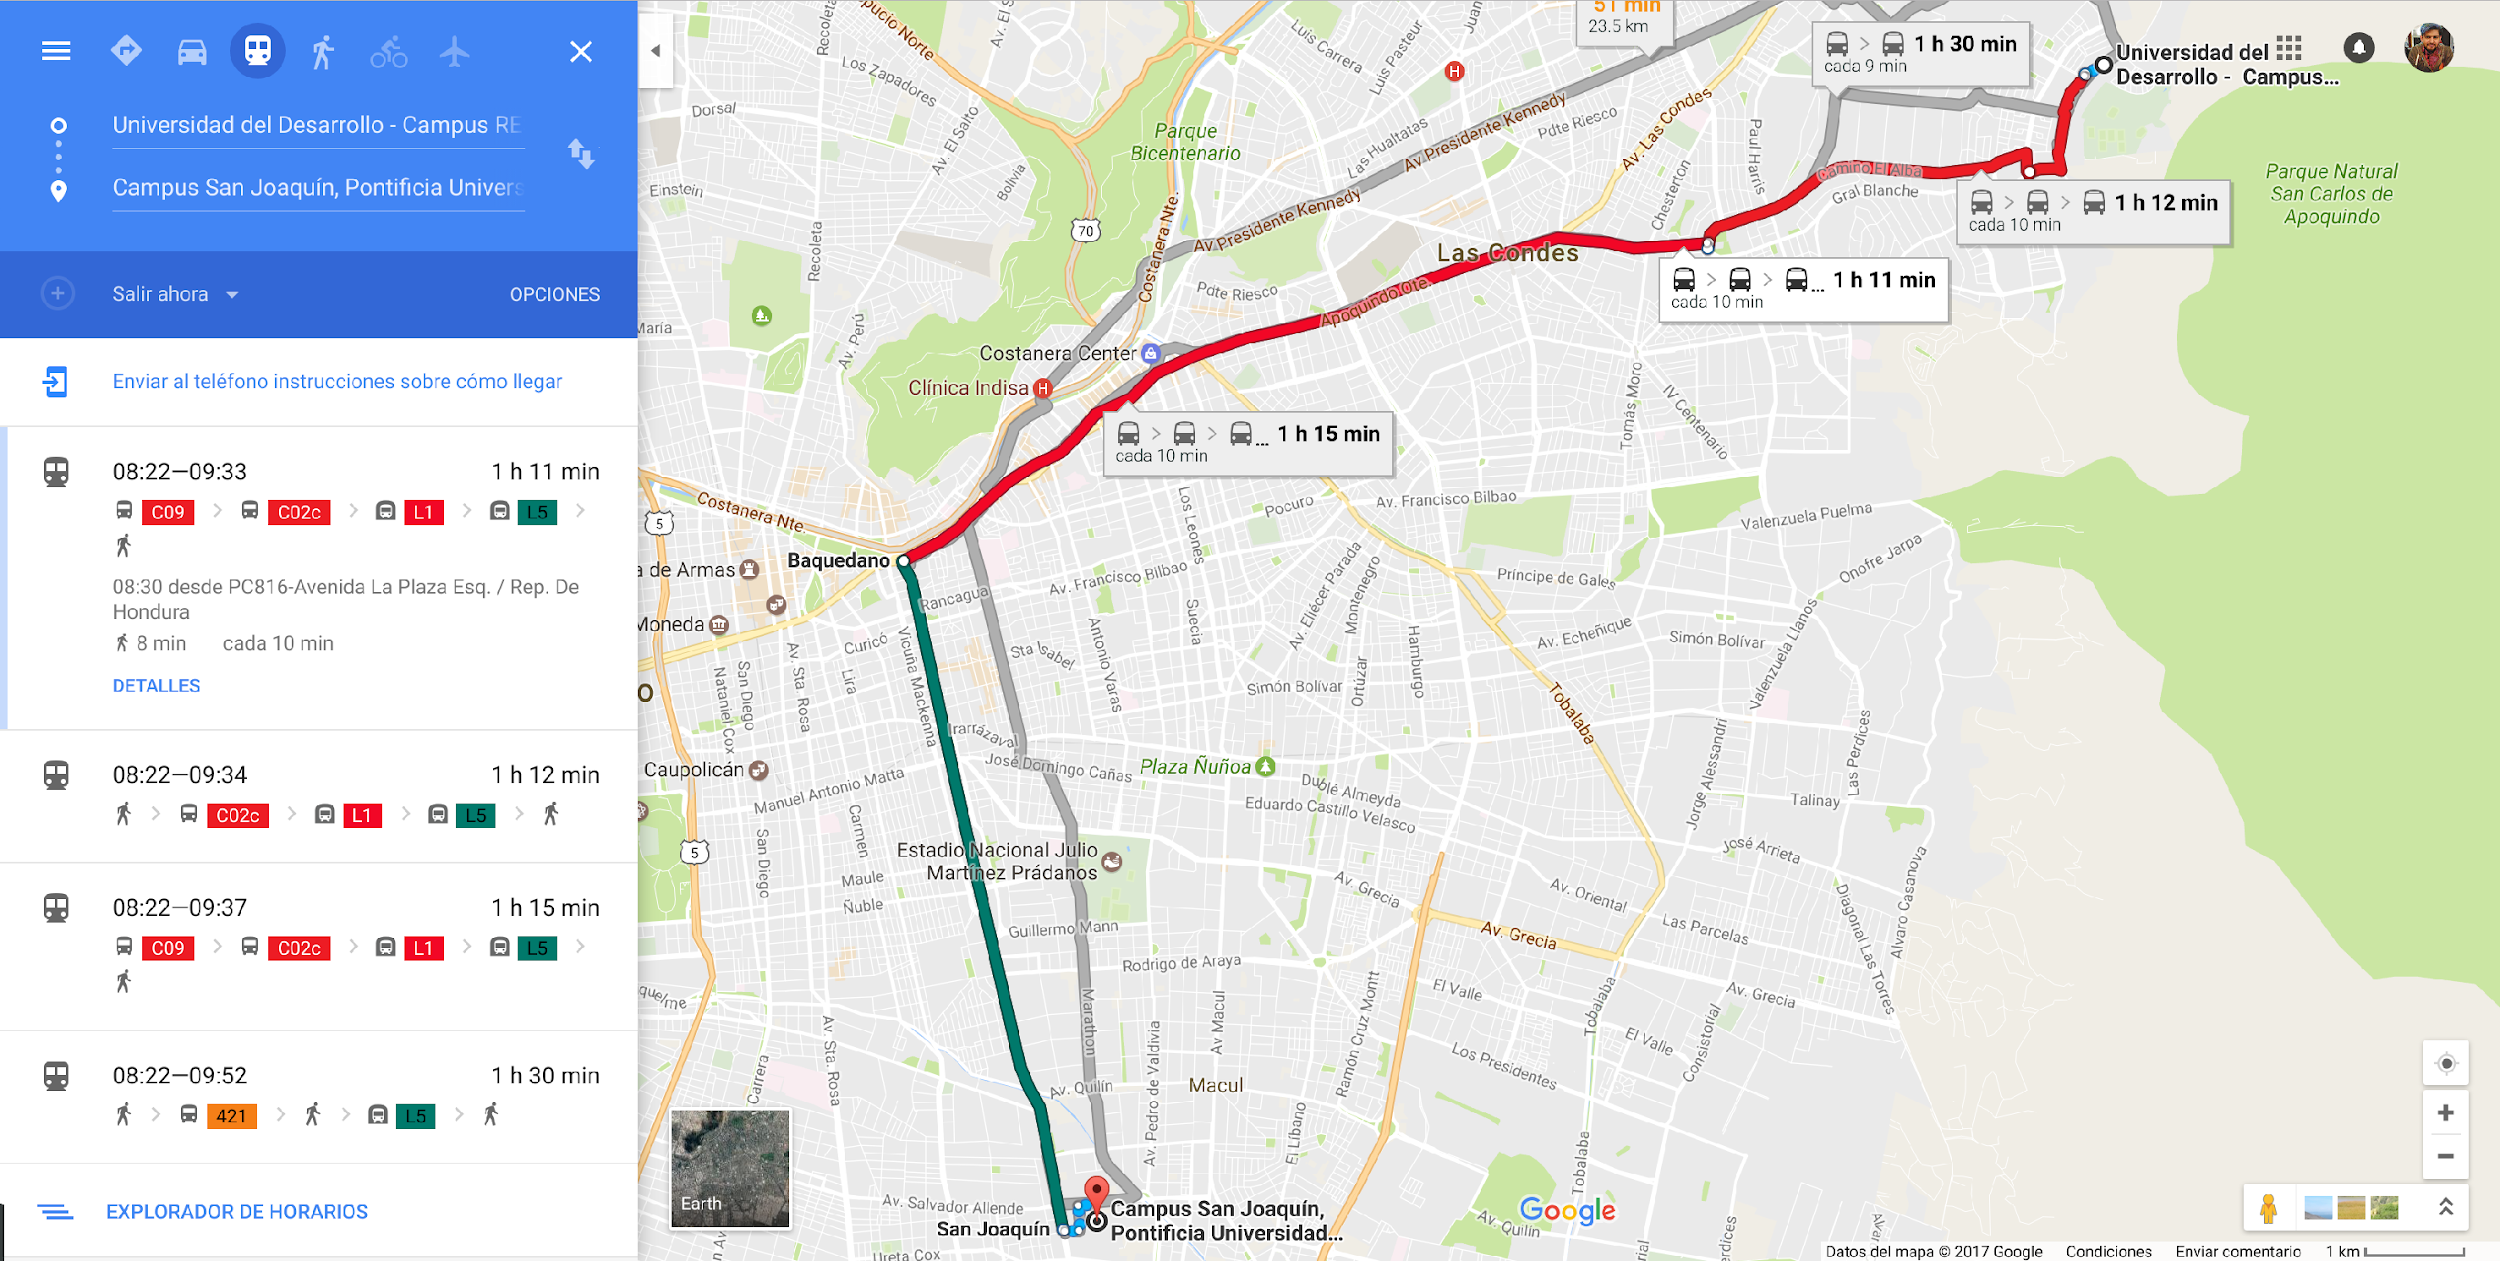 Respuesta de Google Maps a: ¿Cómo llegar desde la UDD hasta la PUC?